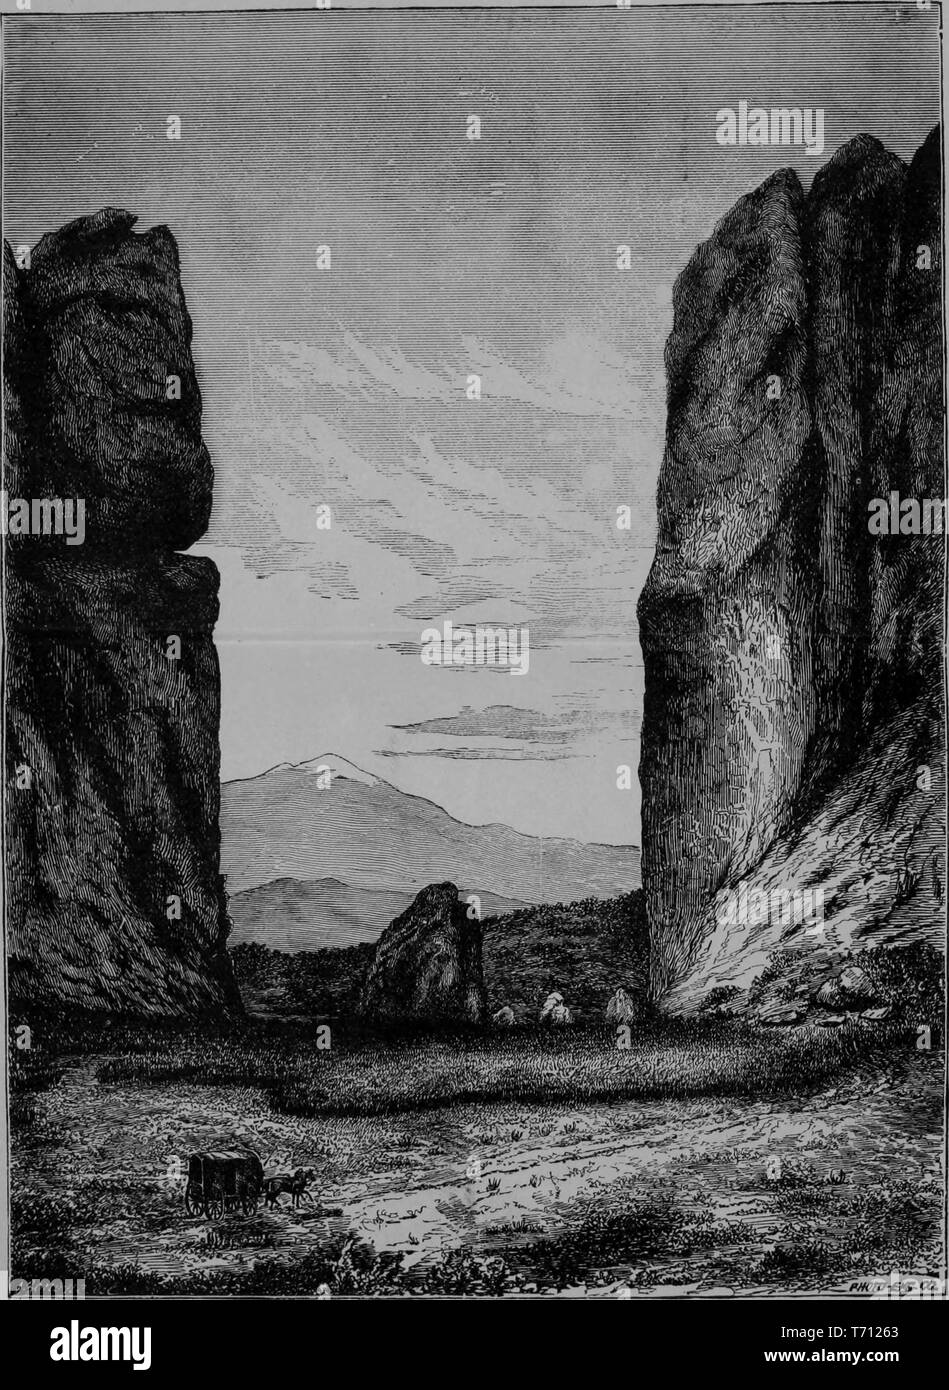 Gravure de Garden of the Gods, Pike's Peak en arrière-plan, du livre "Le nouveau Crofutt tourisme terrestre et de la côte du Pacifique guide', Colorado Springs, Colorado, 1879. Avec la permission de Internet Archive. () Banque D'Images